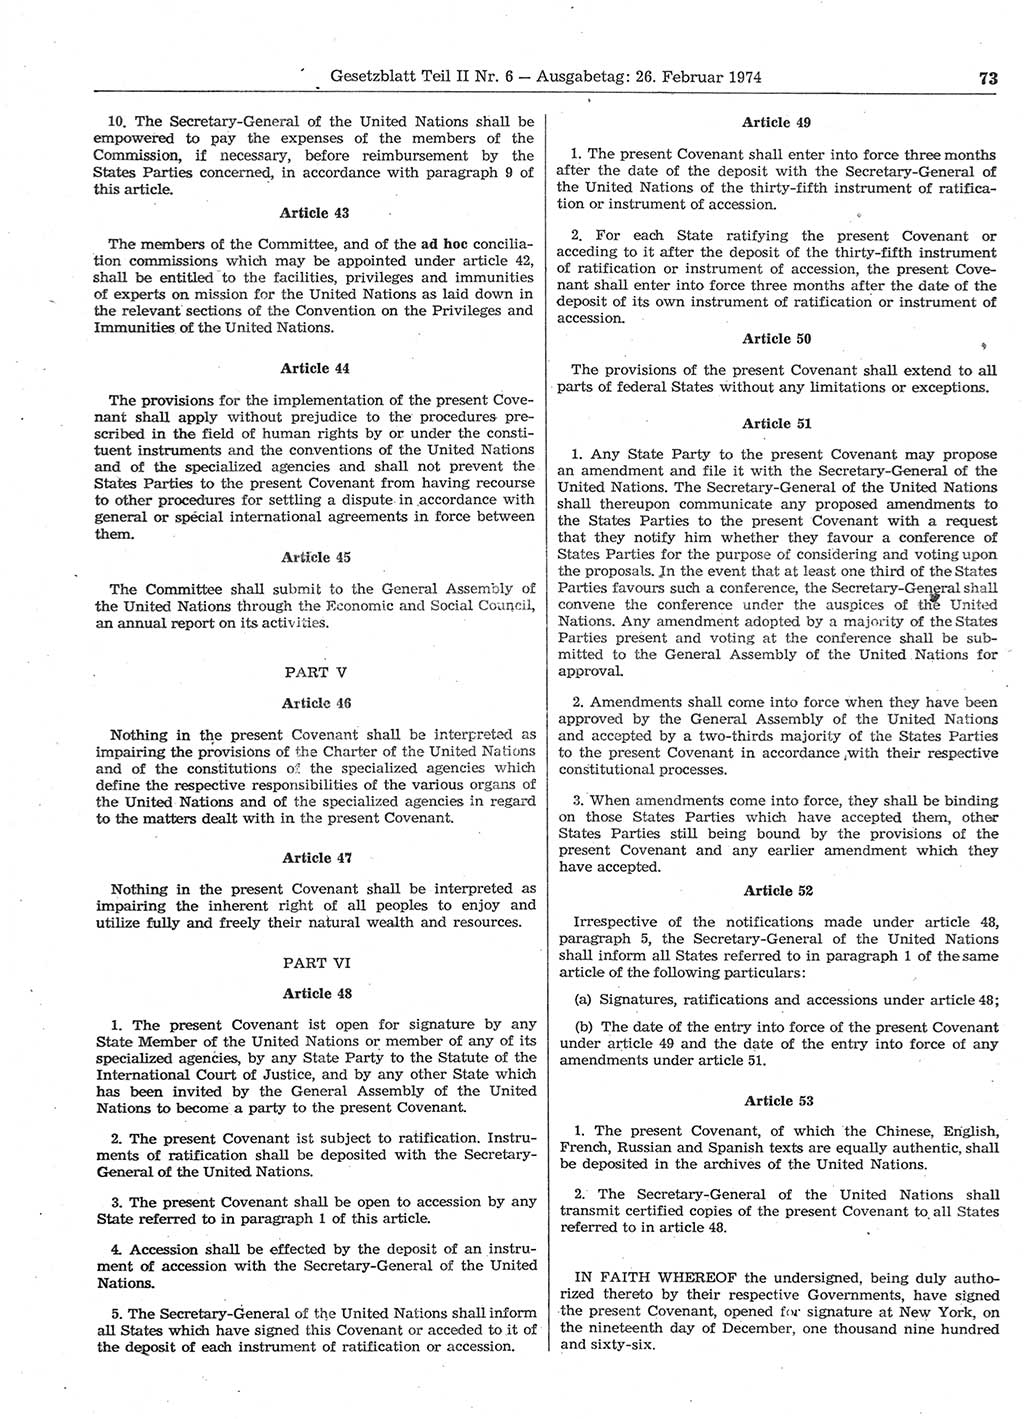 Gesetzblatt (GBl.) der Deutschen Demokratischen Republik (DDR) Teil ⅠⅠ 1974, Seite 73 (GBl. DDR ⅠⅠ 1974, S. 73)